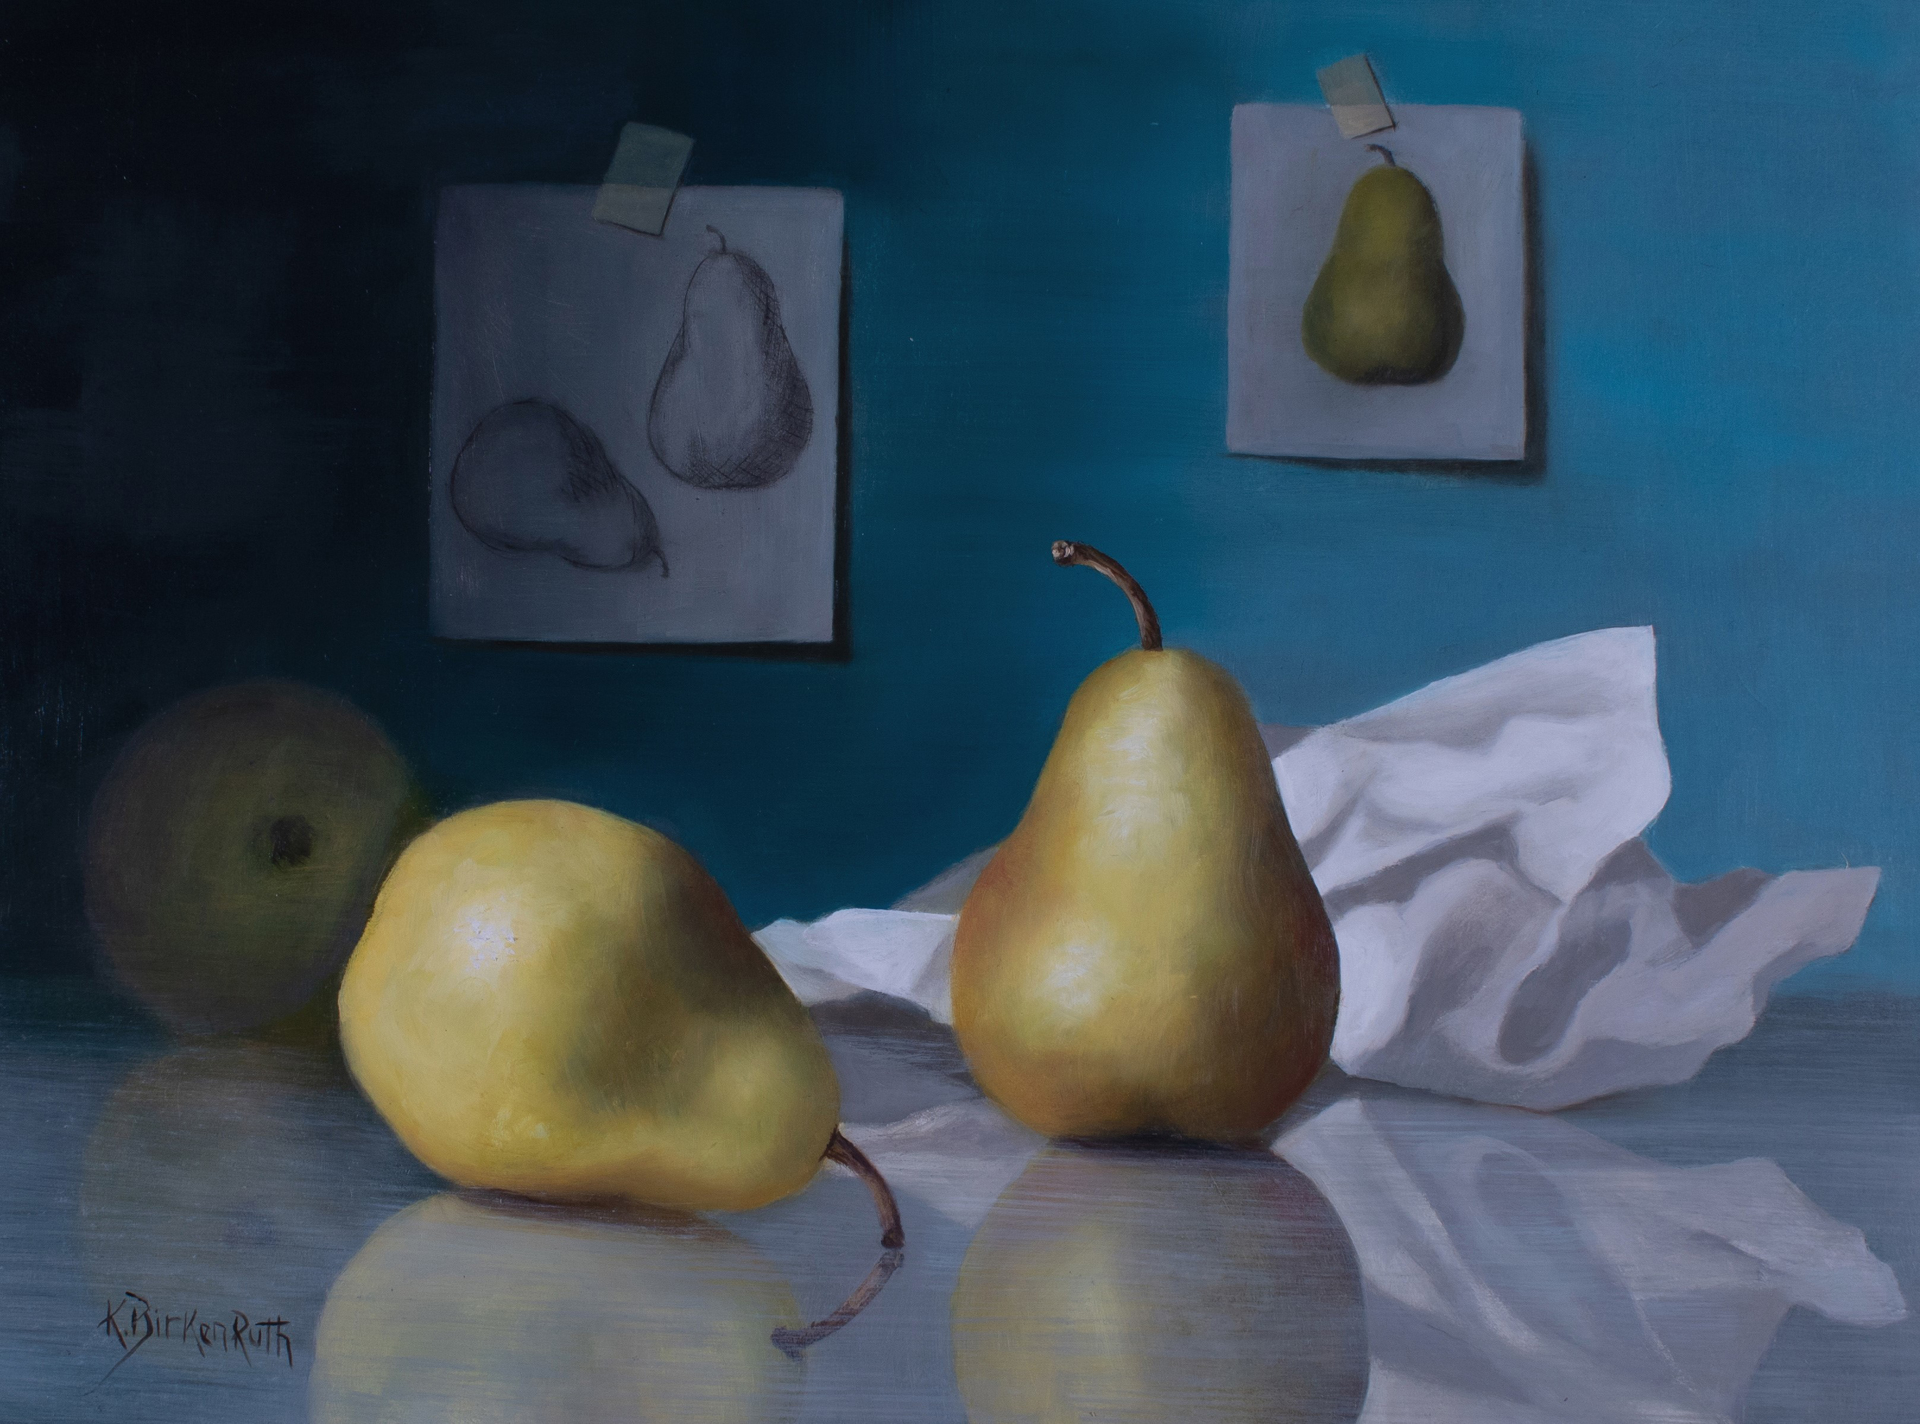 Posing Pears by Kelly Birkenruth